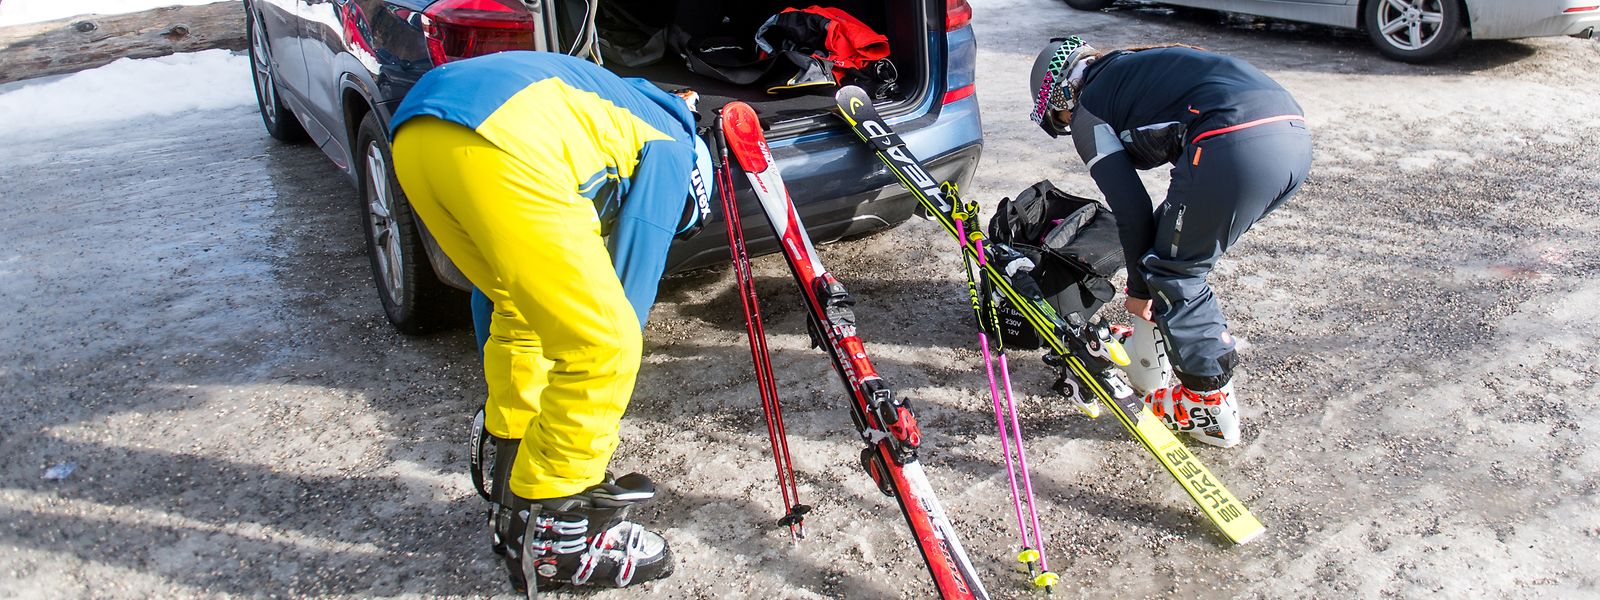 Alles muss mit: Wer mit dem Auto in den Skiurlaub und die Ausrüstung nicht vor Ort mieten will, muss auch diese sicher verstauen können - das gilt auch für Tagesausflüge zur Piste.